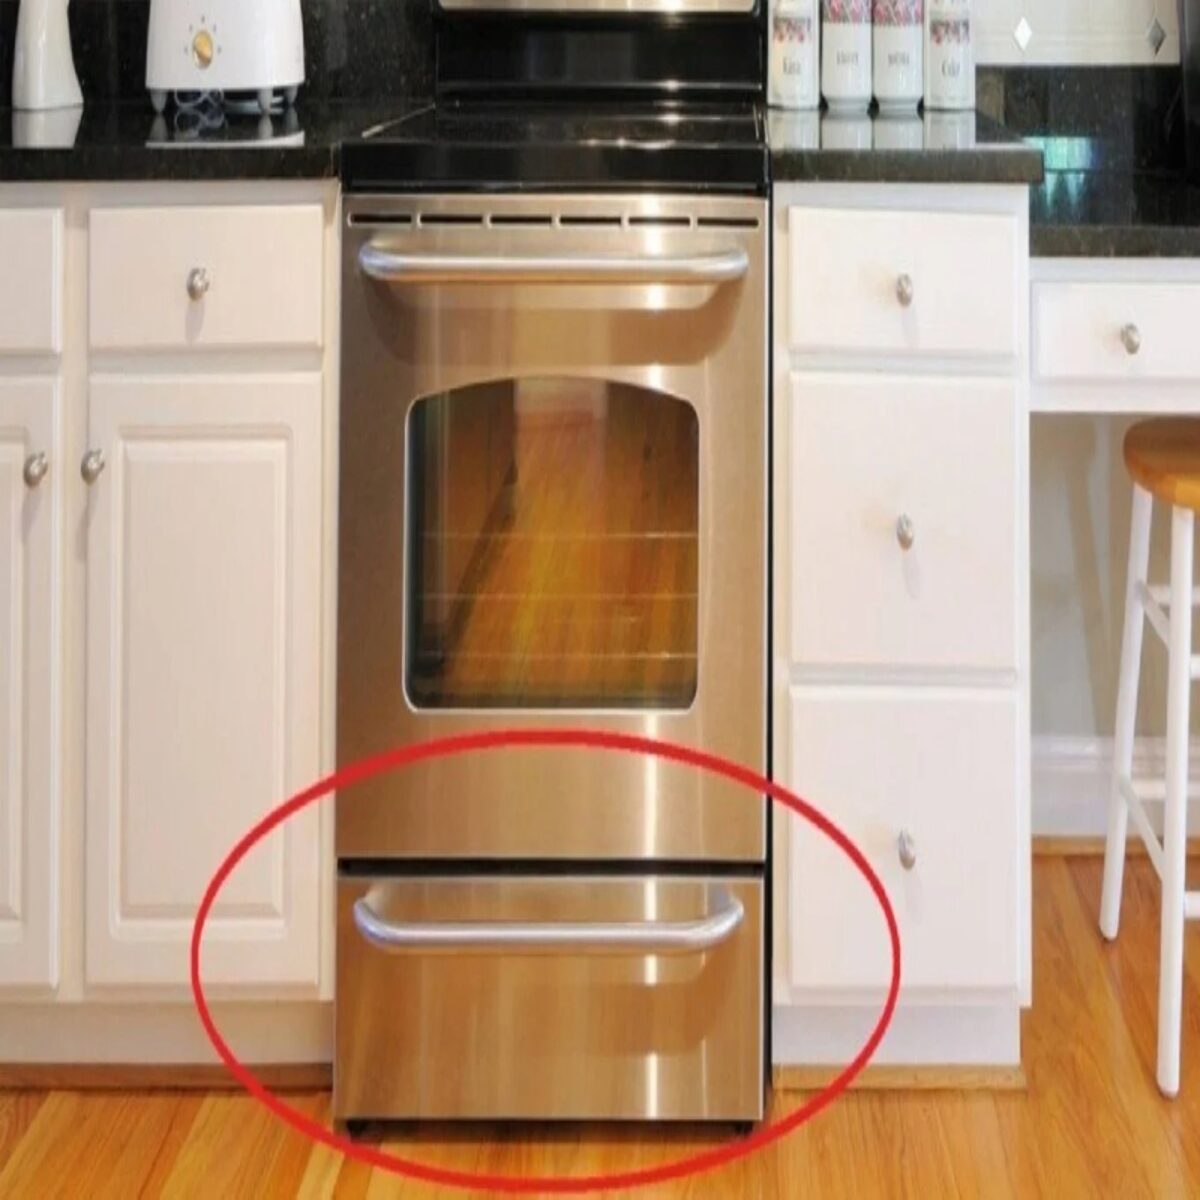 Σε τι χρησιμεύει το συρτάρι κάτω από τον φούρνο: Δεν είναι για να βάζουμε τα ταψιά